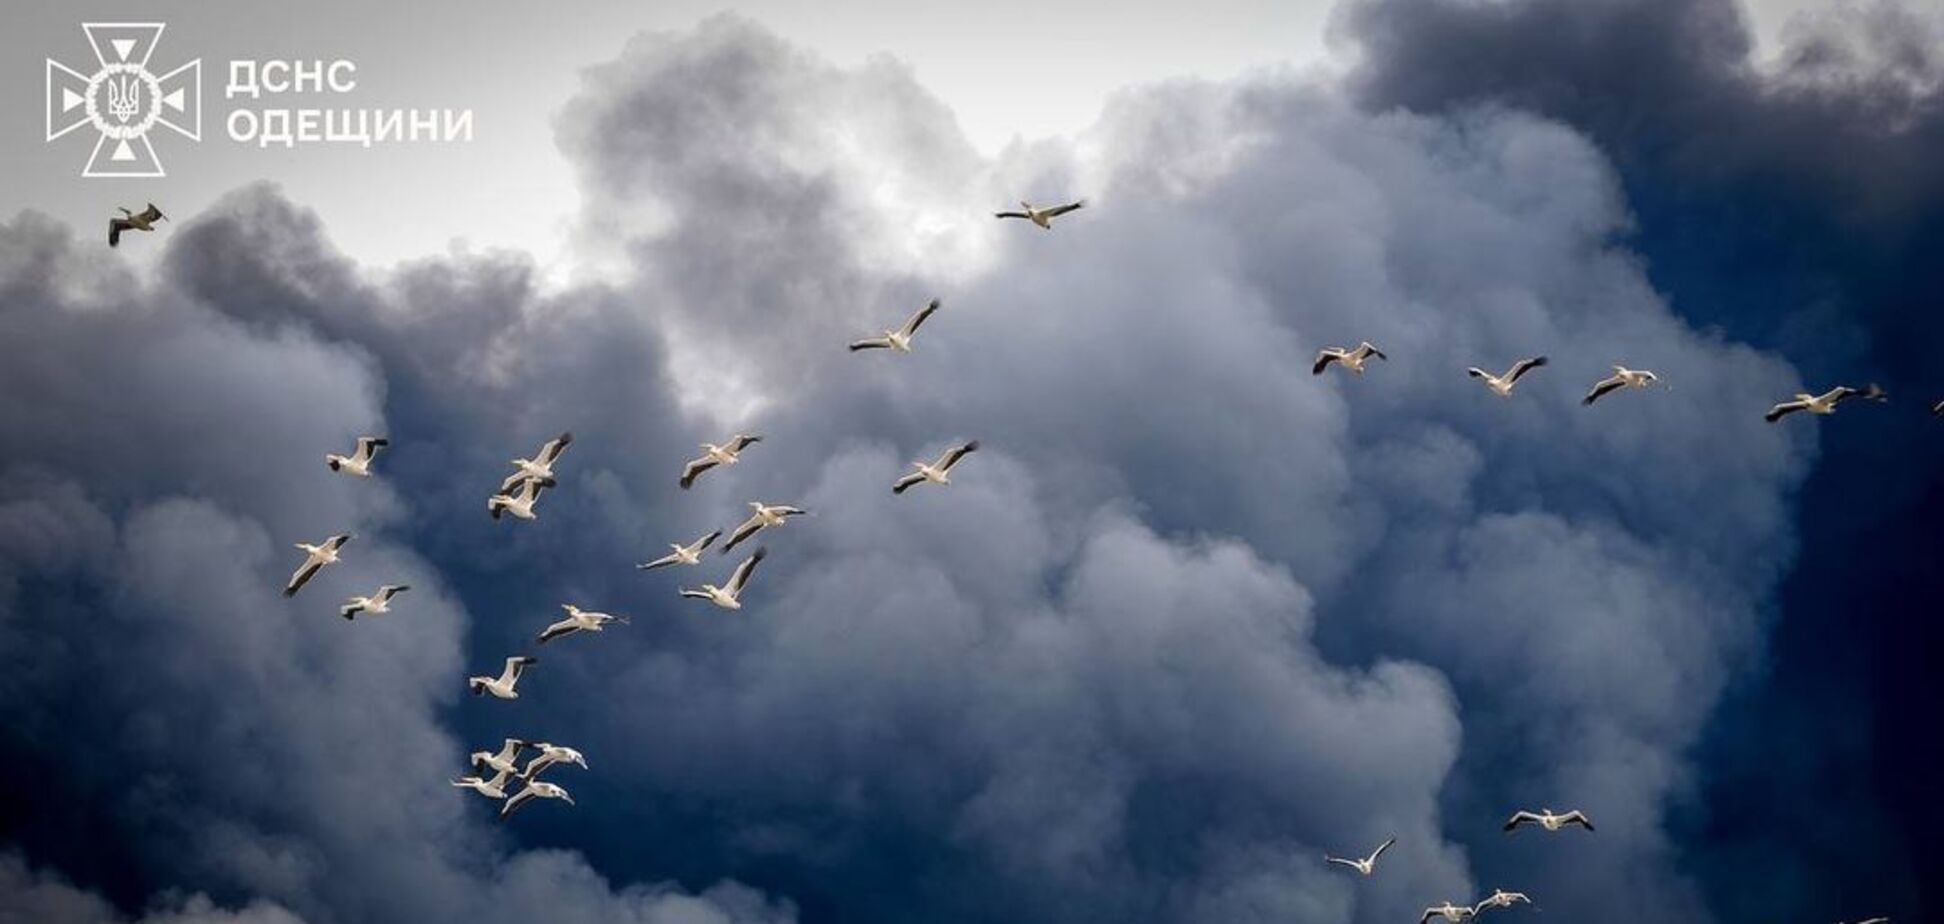 Природа тоже страдает от войны. Фото пеликанов, летящих сквозь дым от ракетных обстрелов Одесской области, растрогало сеть